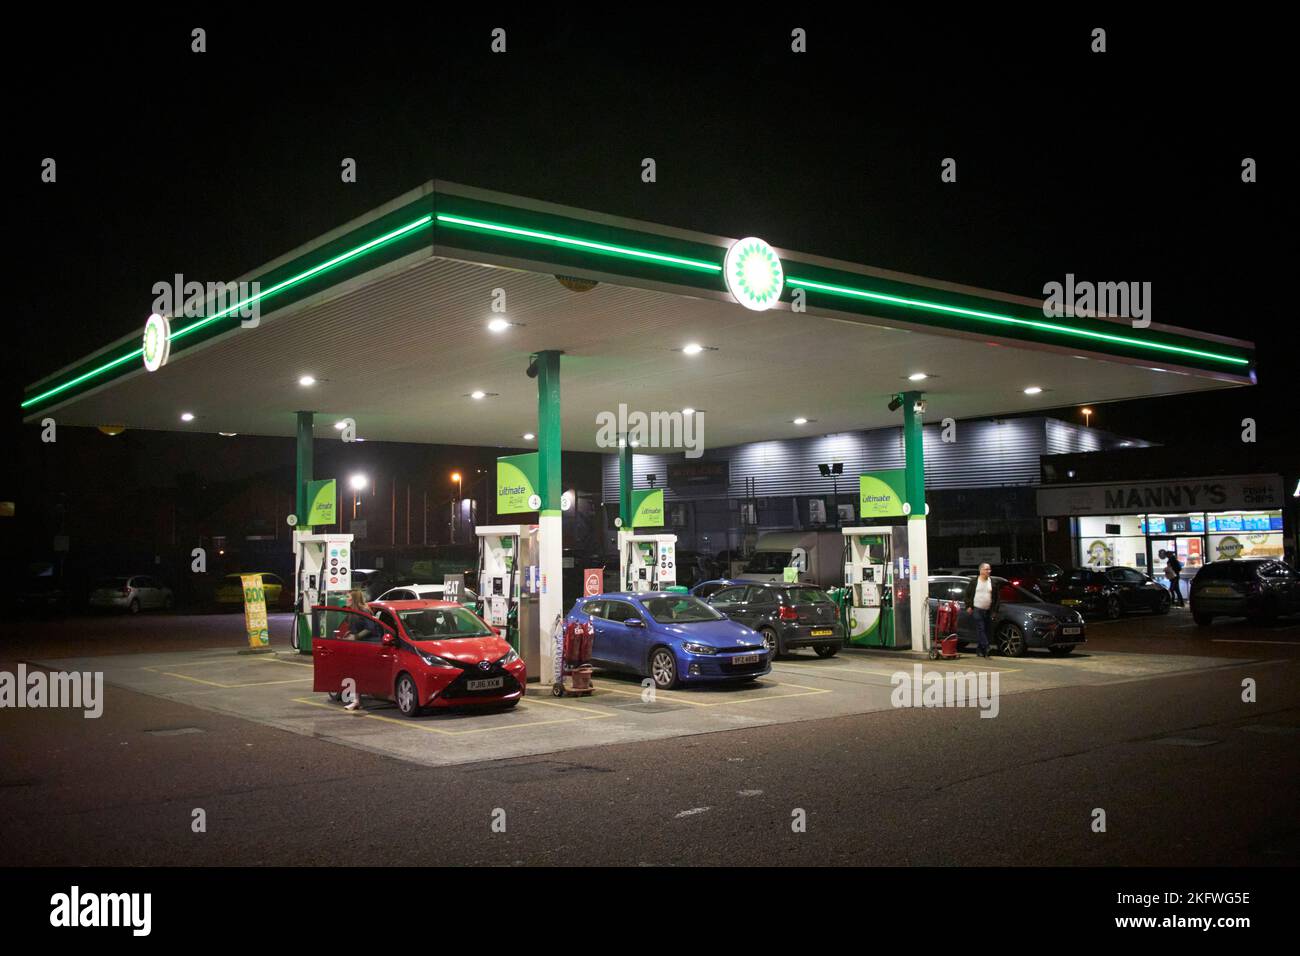 poste de service de garage bp la nuit avec ravitaillement en carburant de voitures au royaume-uni Banque D'Images